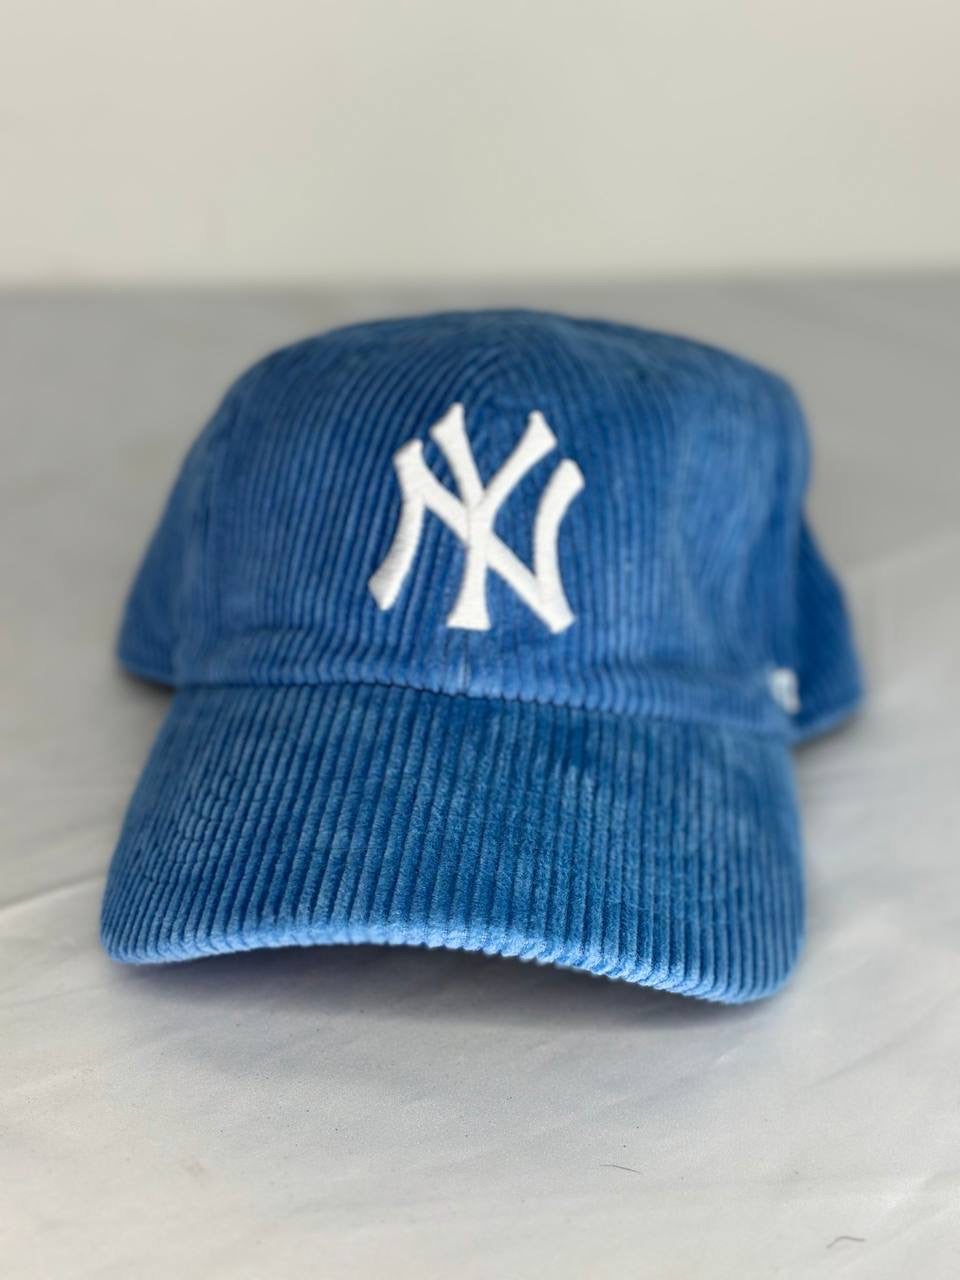 Urban hat